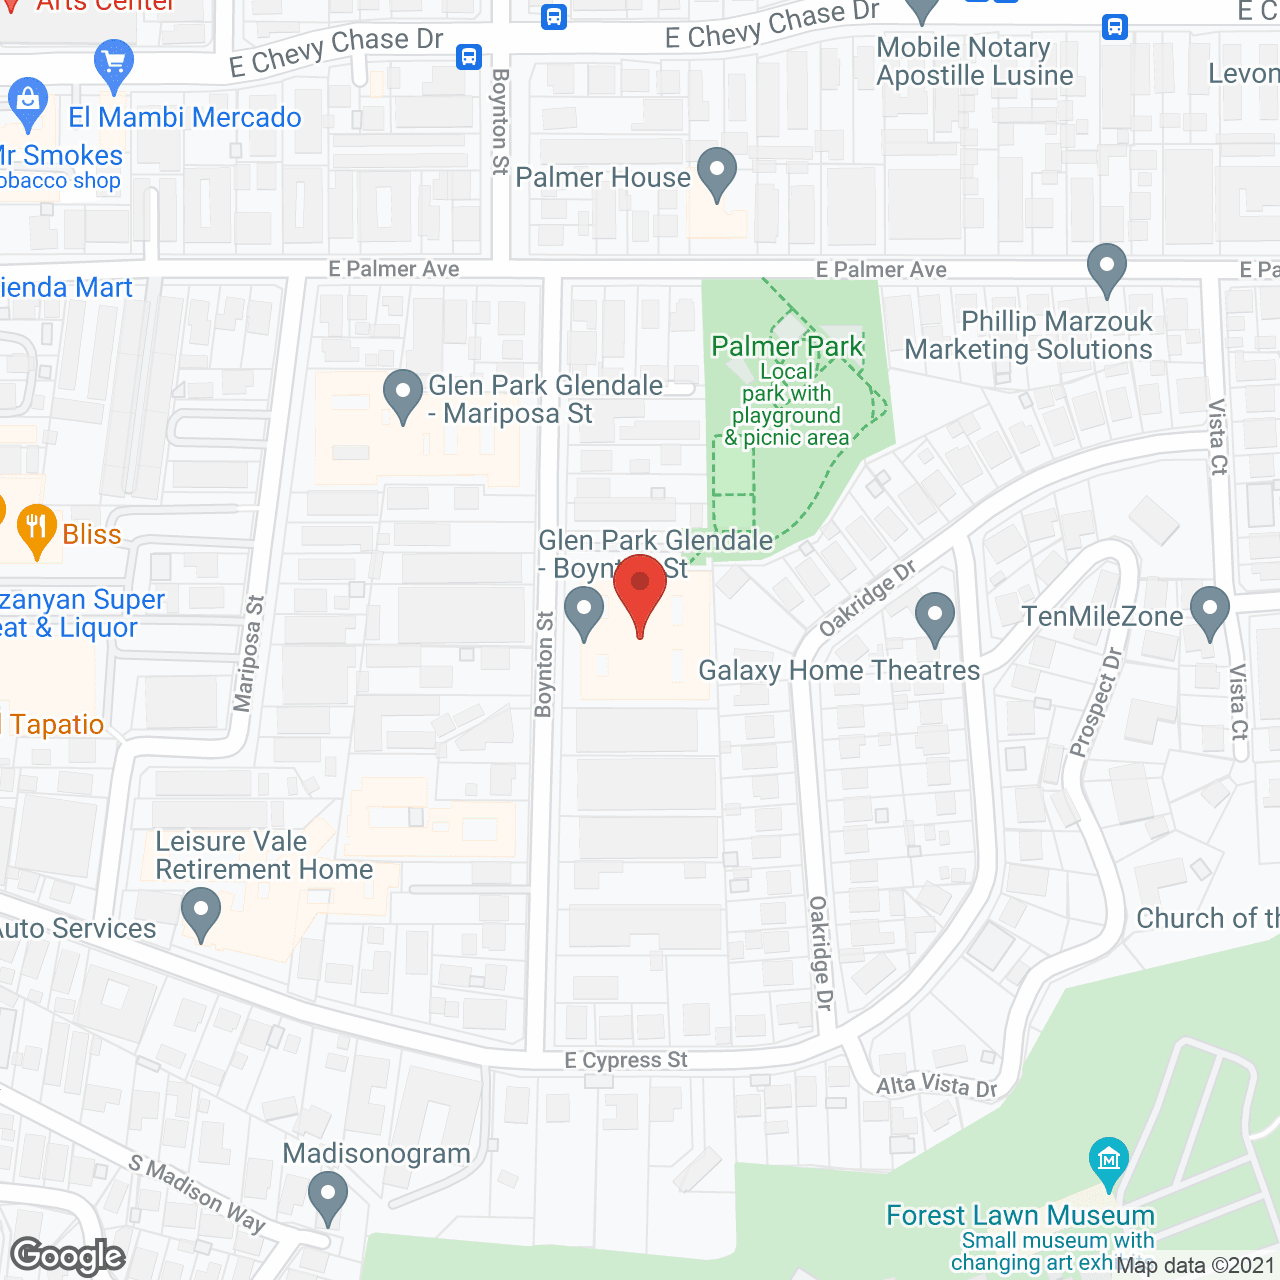 Glen Park at Glendale - Boynton St in google map